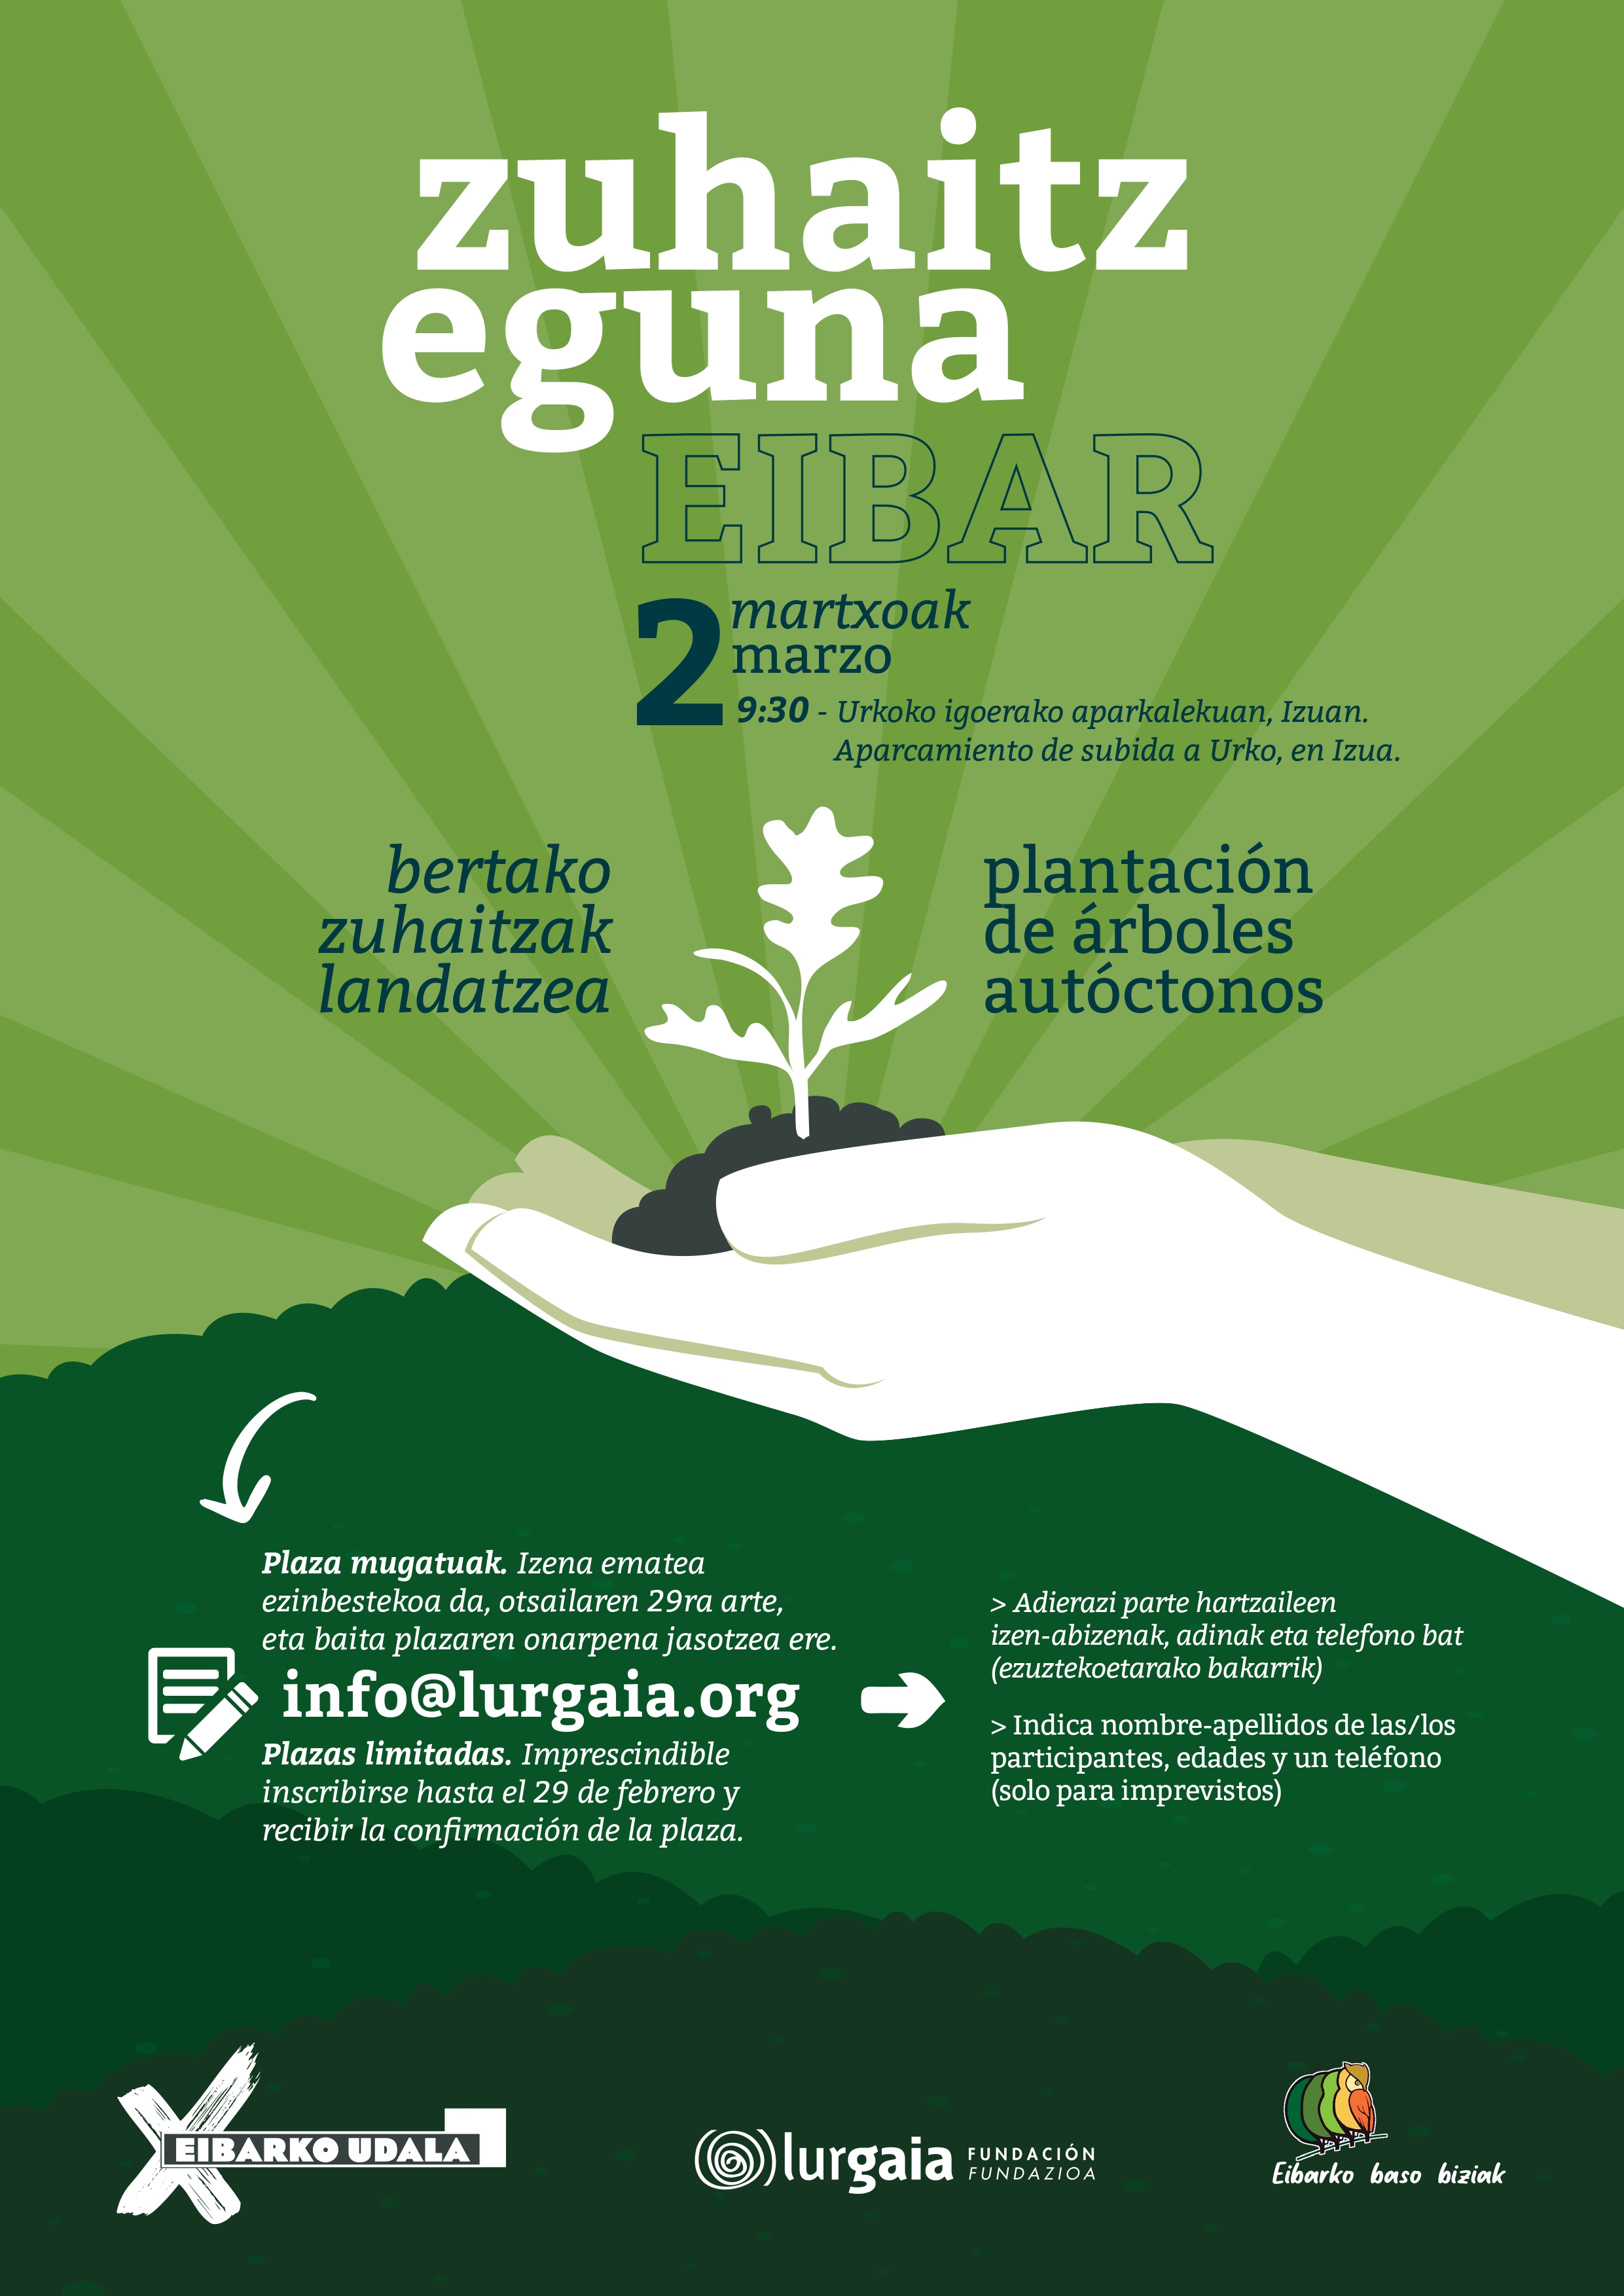 Eibar celebrará el 2 de marzo el 'Zuhaitz Eguna', con la plantación de 500 árboles autóctonos